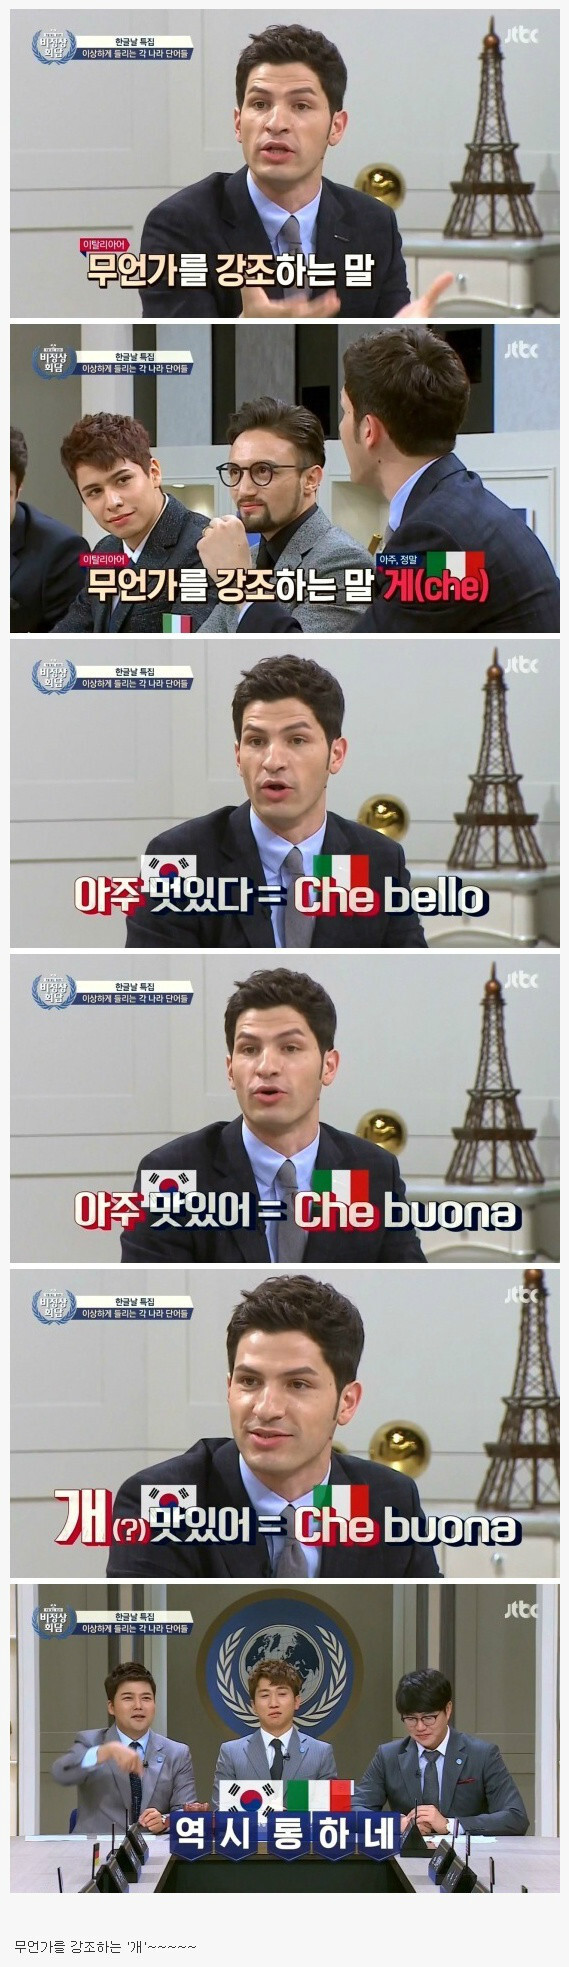 한국사람들이 잘 쓰는 이탈리아어